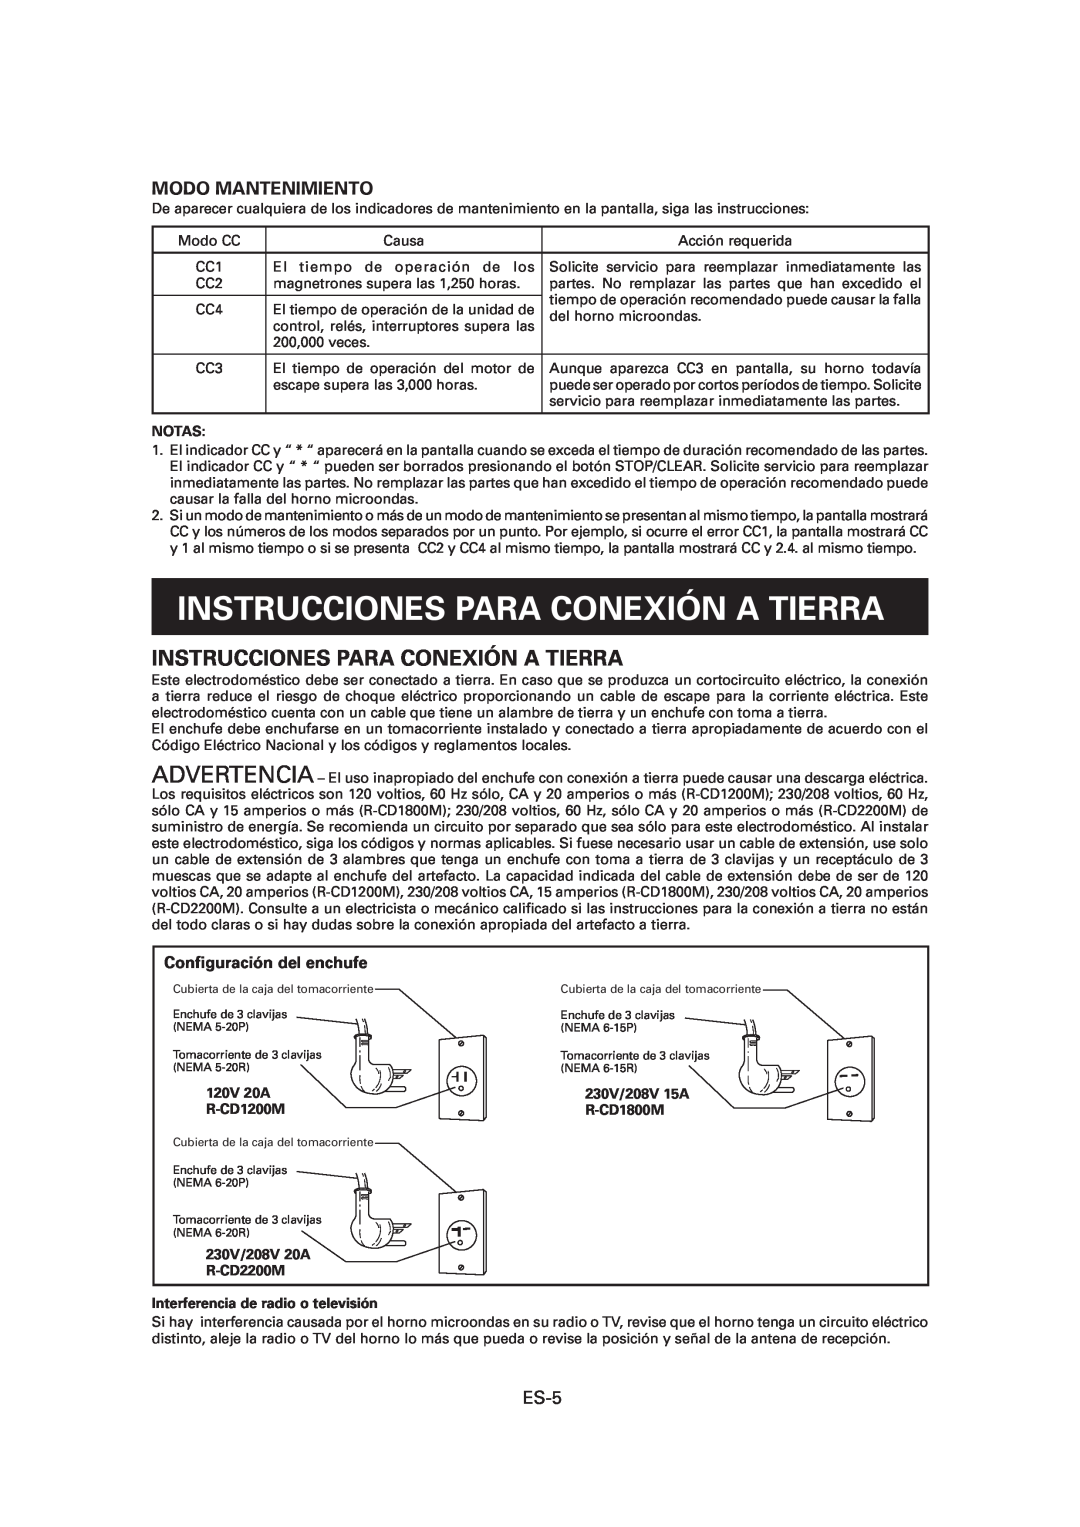 Sharp R-CD1200M Instrucciones Para Conexión A Tierra, Modo Mantenimiento, Conﬁguración del enchufe, Notas, 120V 20A 